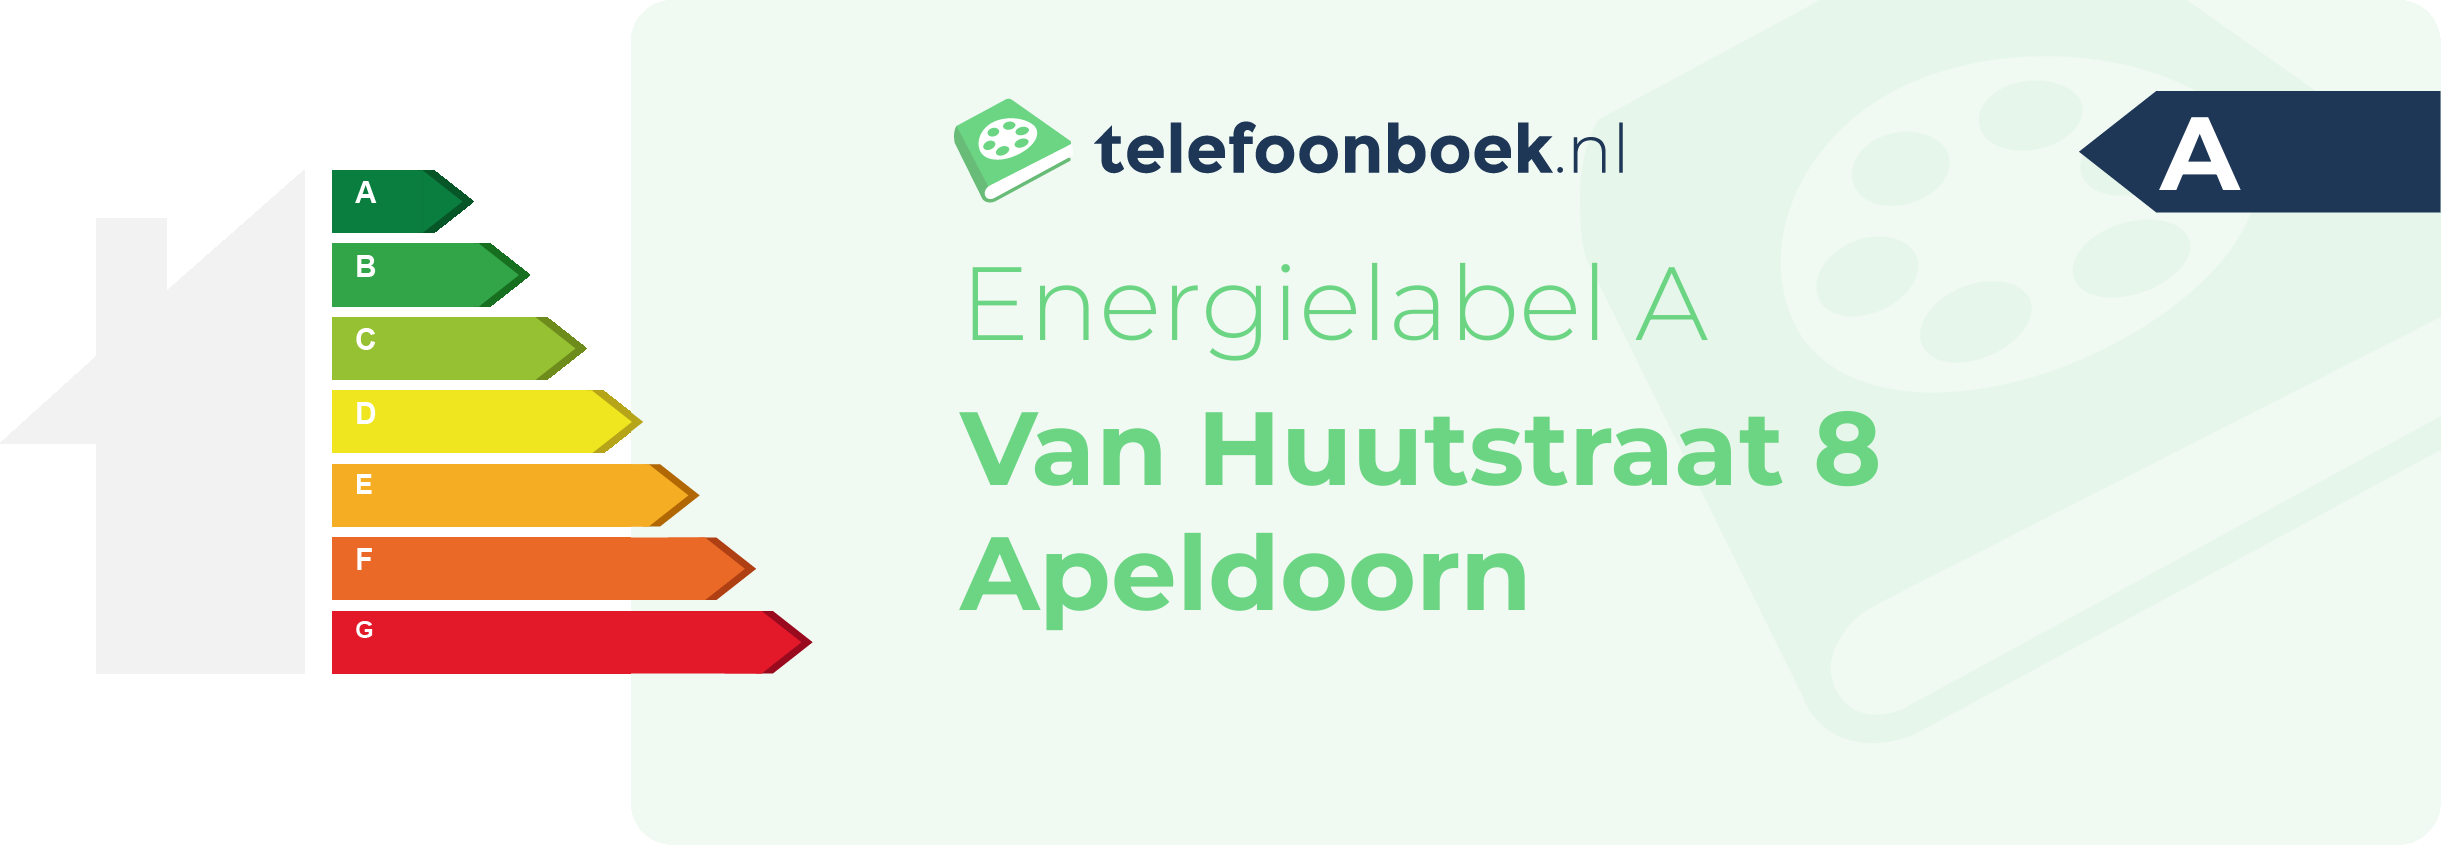 Energielabel Van Huutstraat 8 Apeldoorn